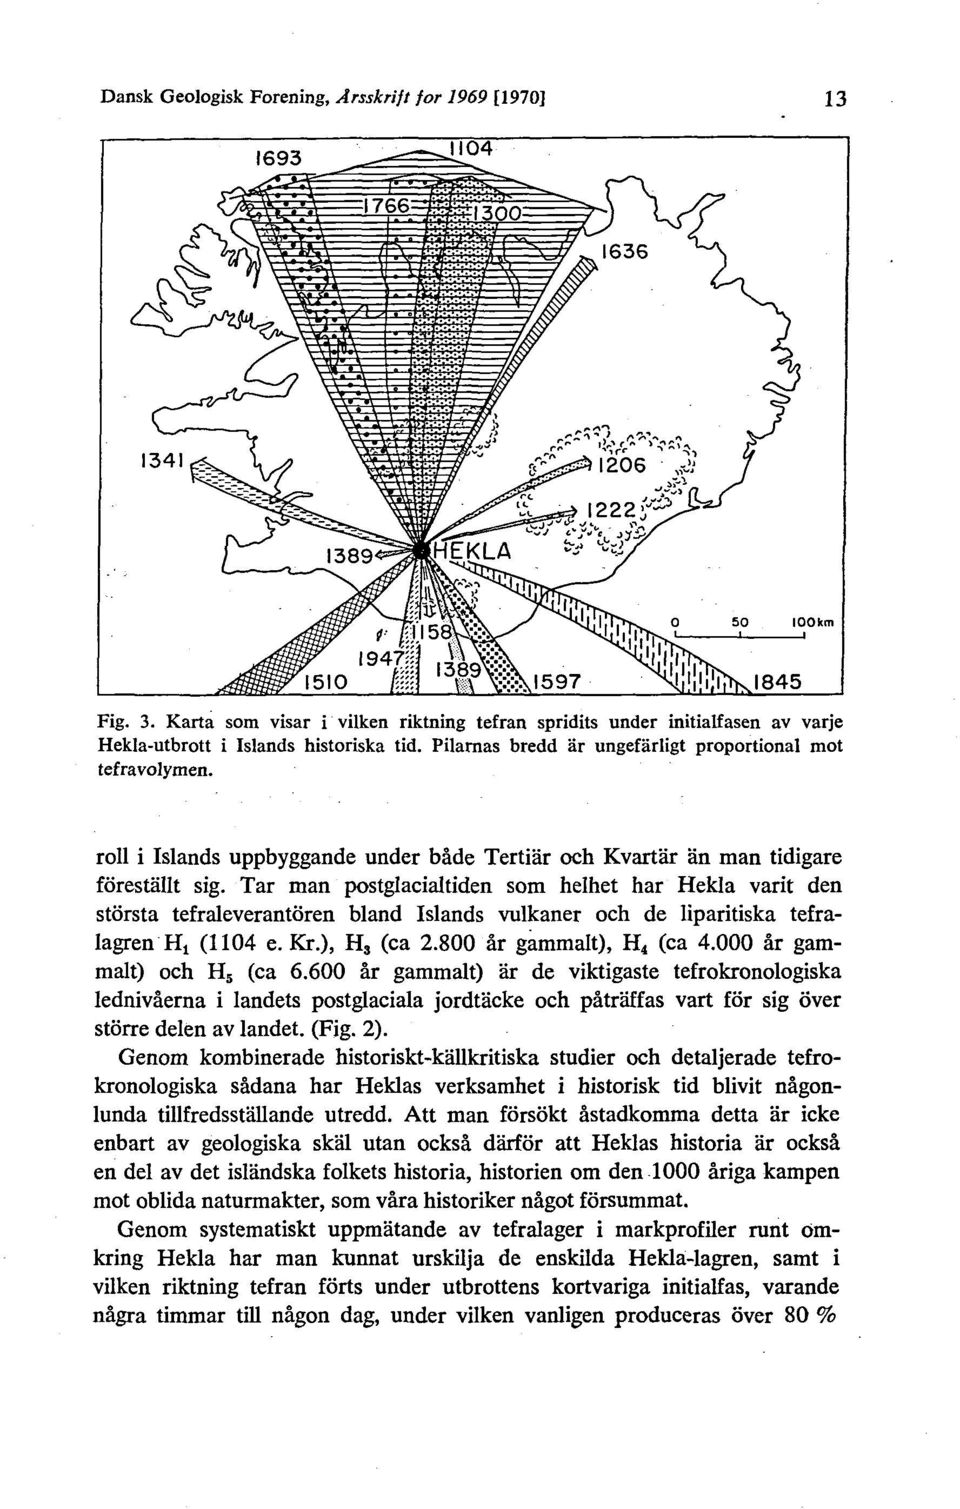 Tar man postglacialtiden som helhet har Hekla varit den storsta tefraleverantoren bland Islands vulkaner och de liparitiska tefralagren Ht (1104 e. Kr.), H 3 (ca 2.800 år gammalt), H 4 (ca 4.